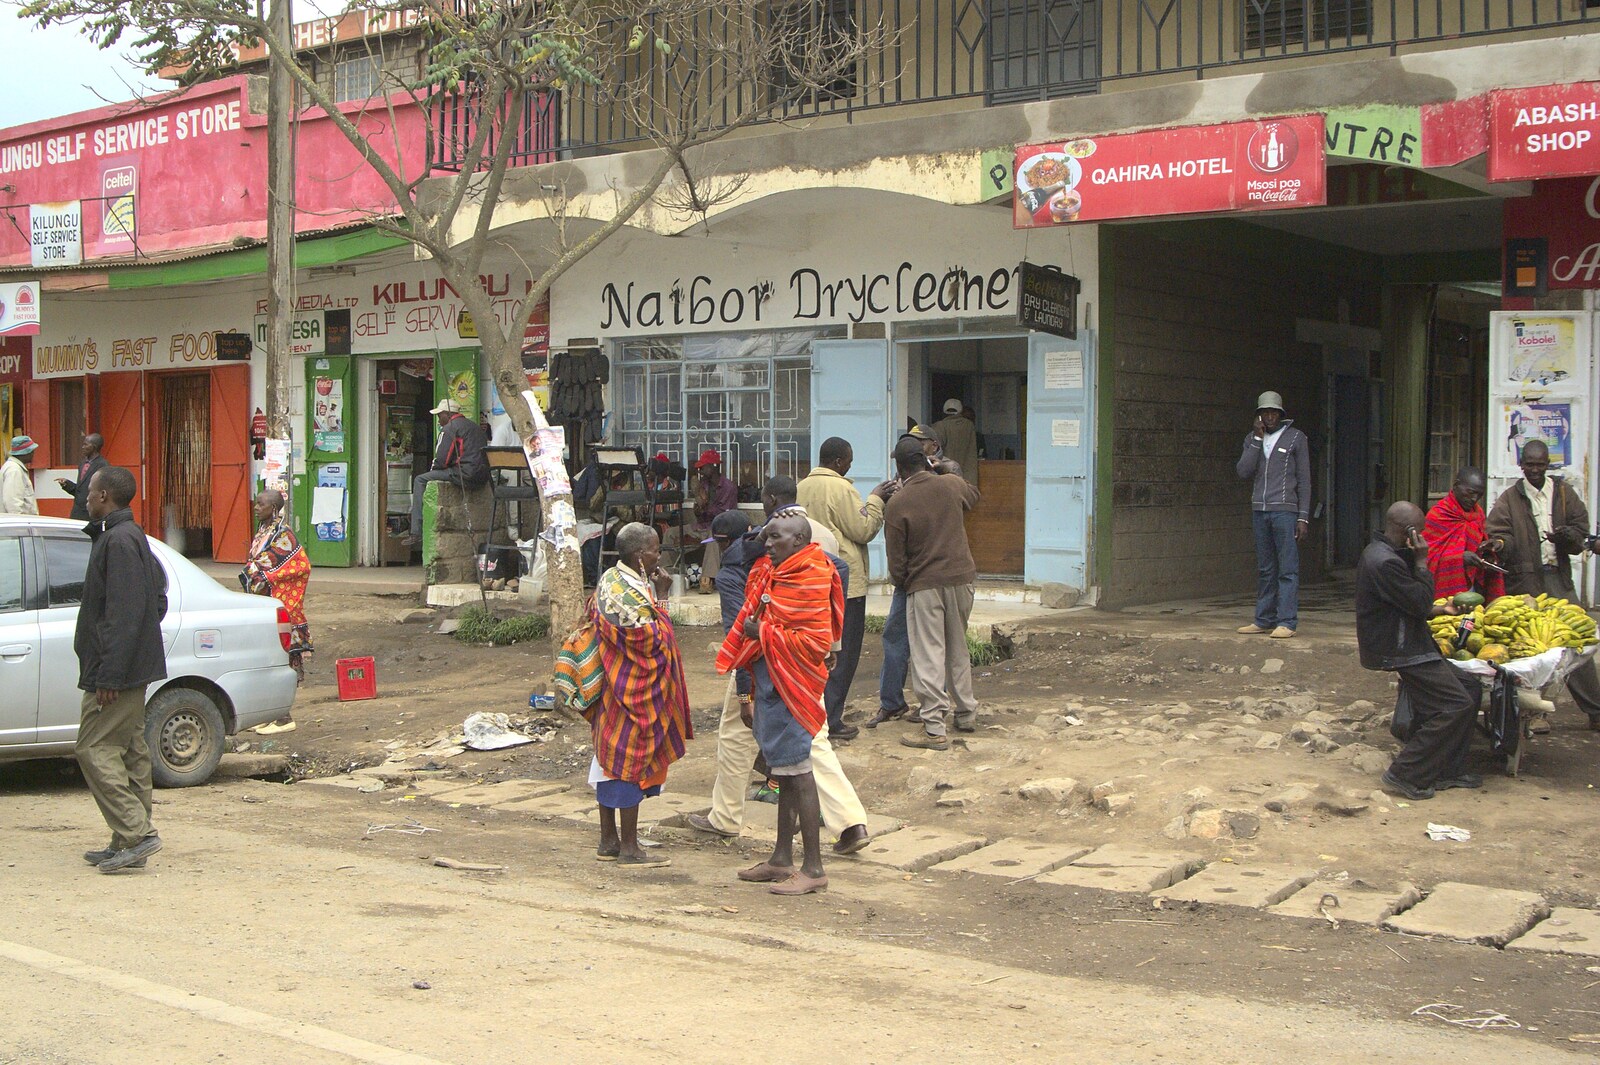 Naibor Drycleane from Nairobi and the Road to Maasai Mara, Kenya, Africa - 1st November 2010